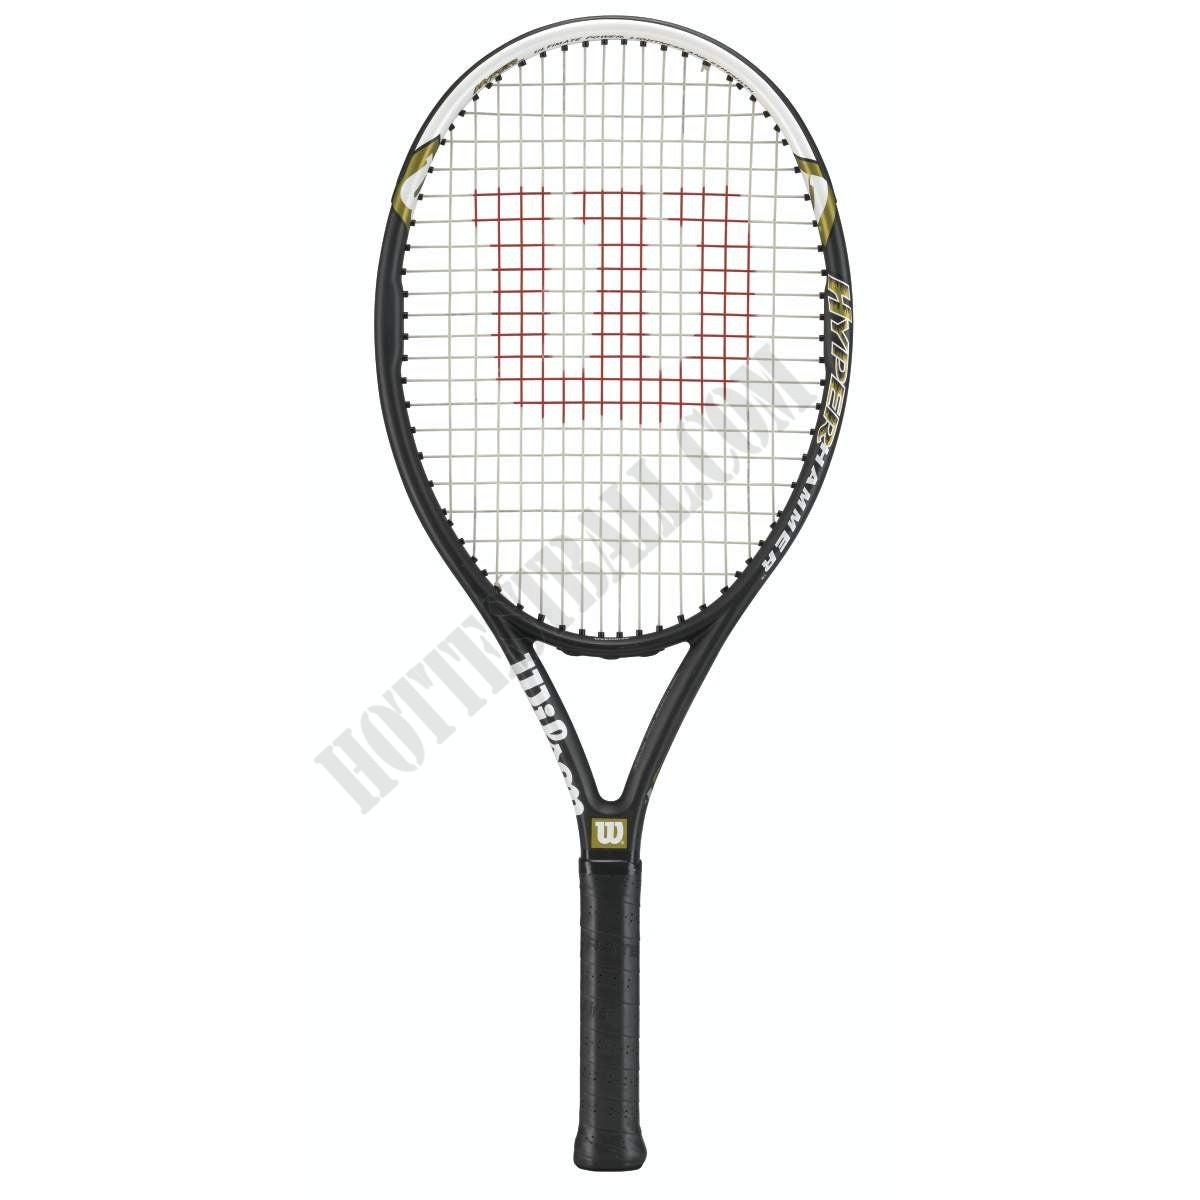 Hyper Hammer 5.3 Tennis Racket - Wilson Discount Store - -2